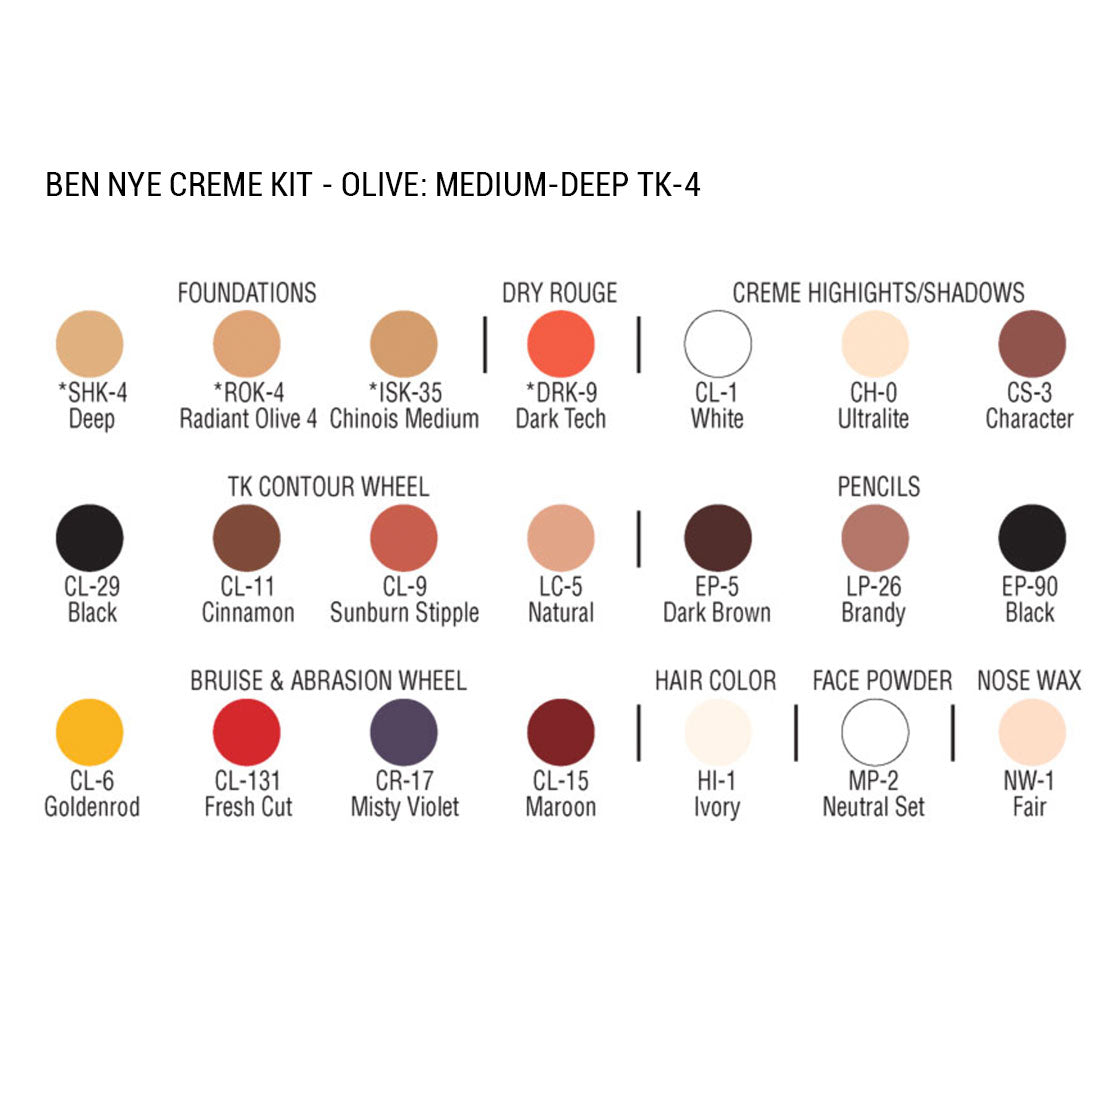 Ben Nye Creme Personal Kit, Olive - Medium